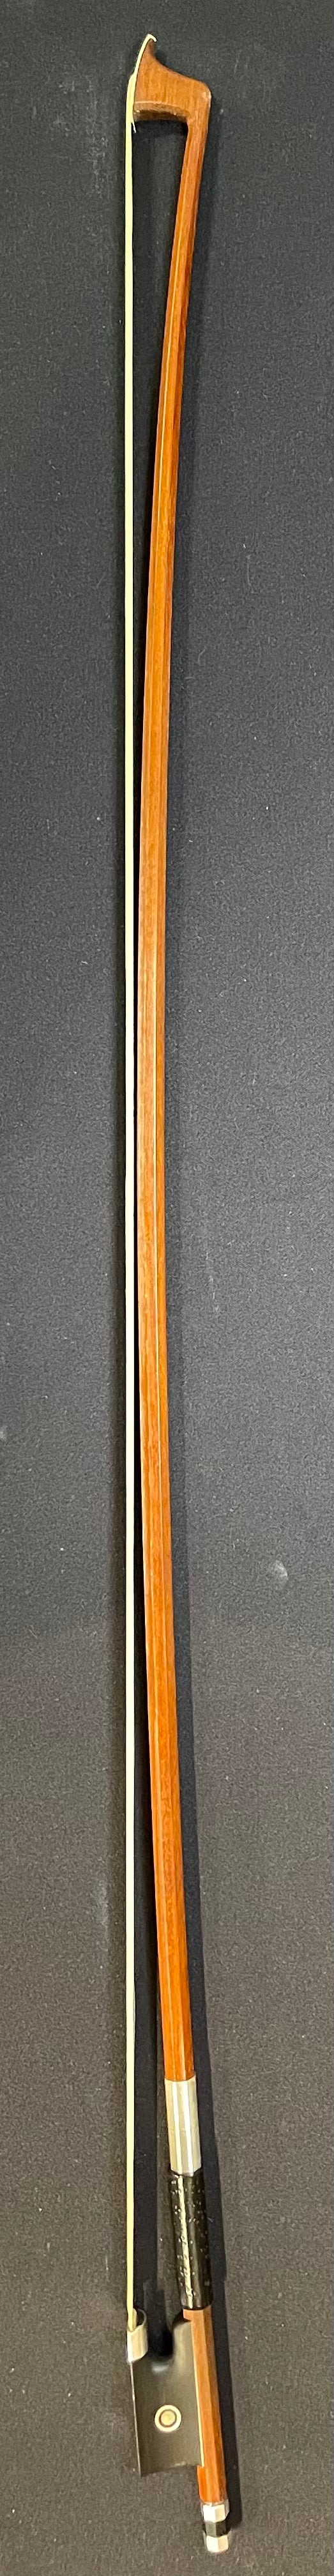 4/4 Violin Bow - H. R. Pfretzschner Original Wood Model